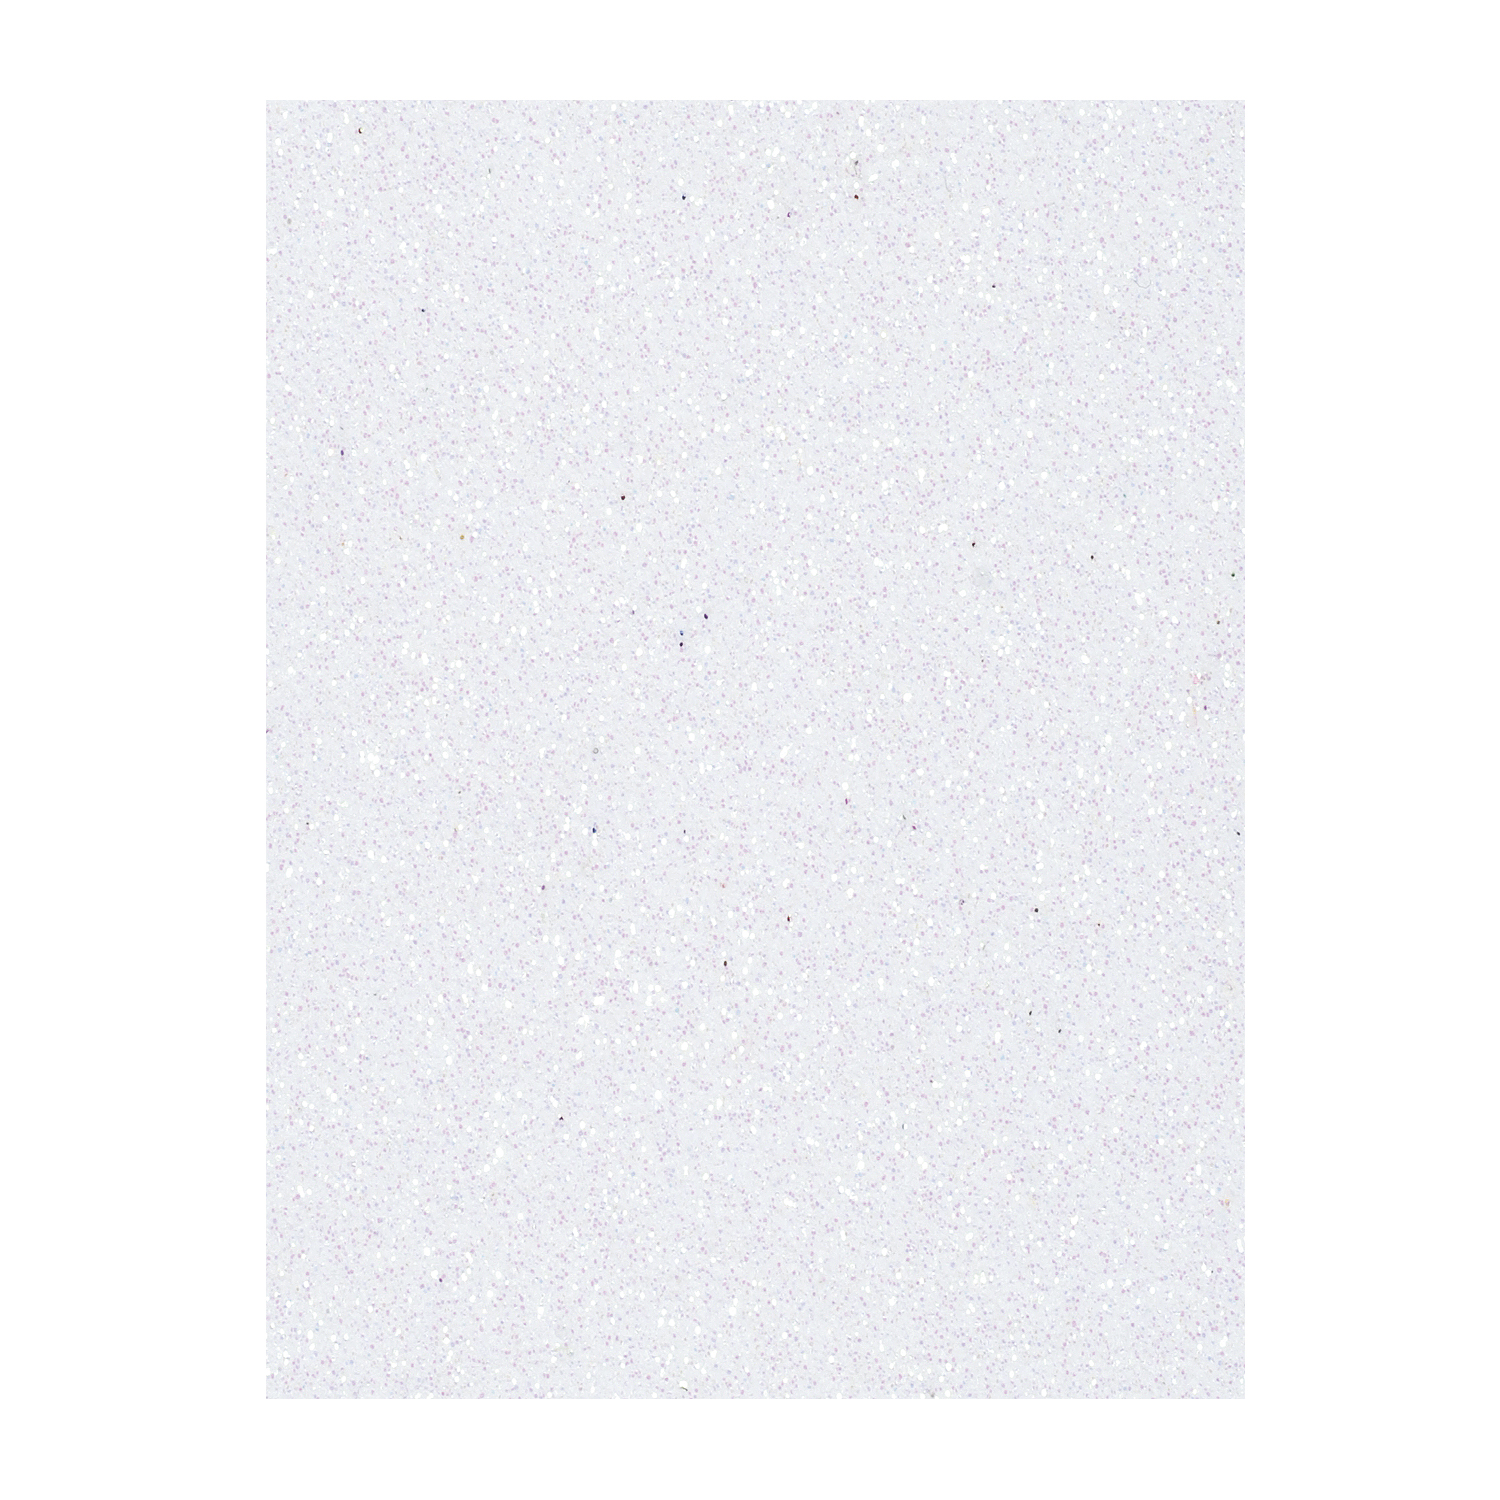 NEU Moosgummiplatte, Glitzer / Glitter, Stärke 2mm, Größe 20x30cm, weiß